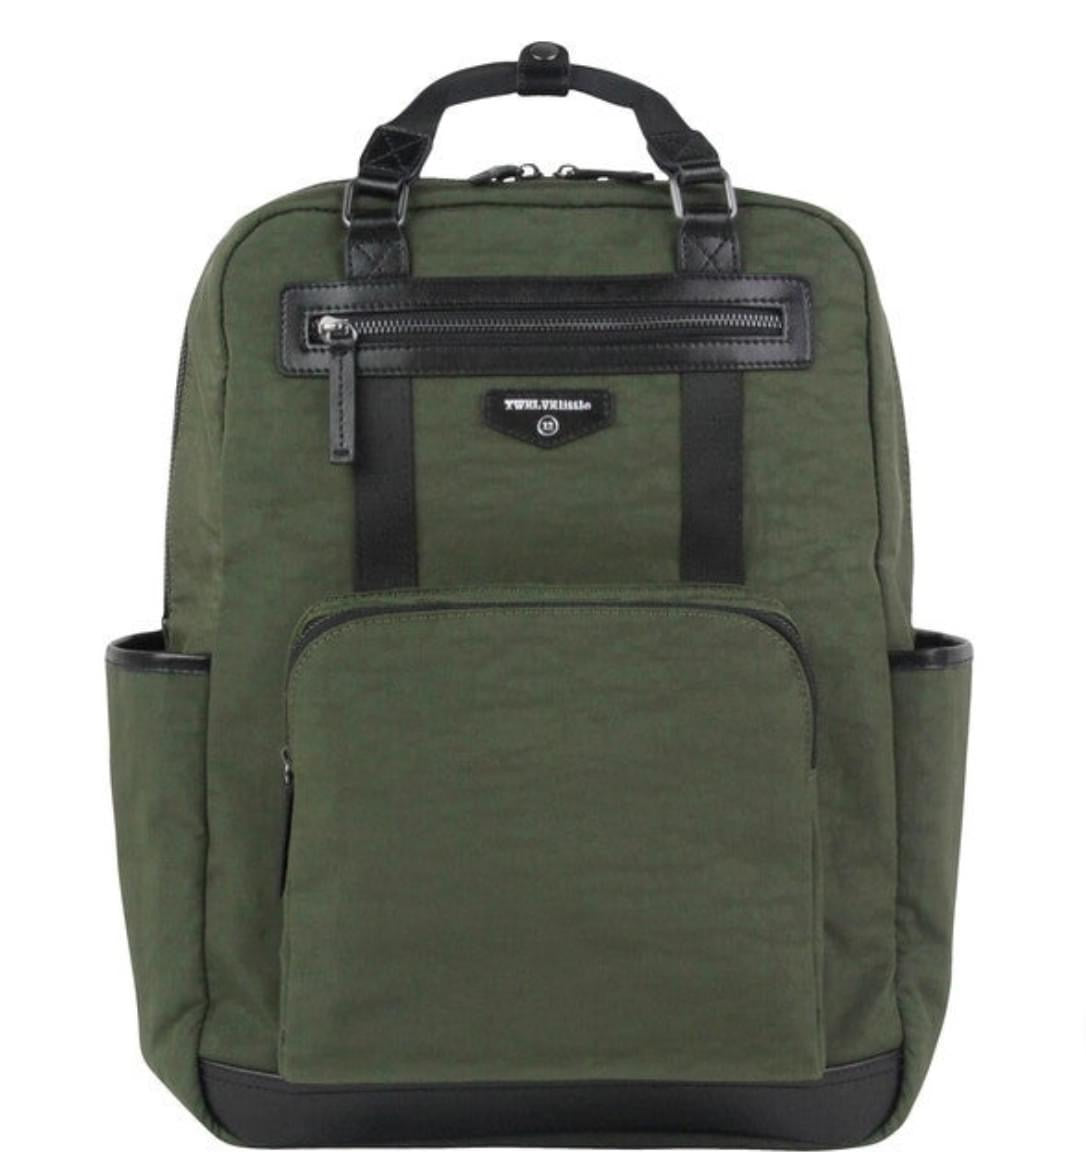 Twelvelittle Unisex Courage Backpack 1.0